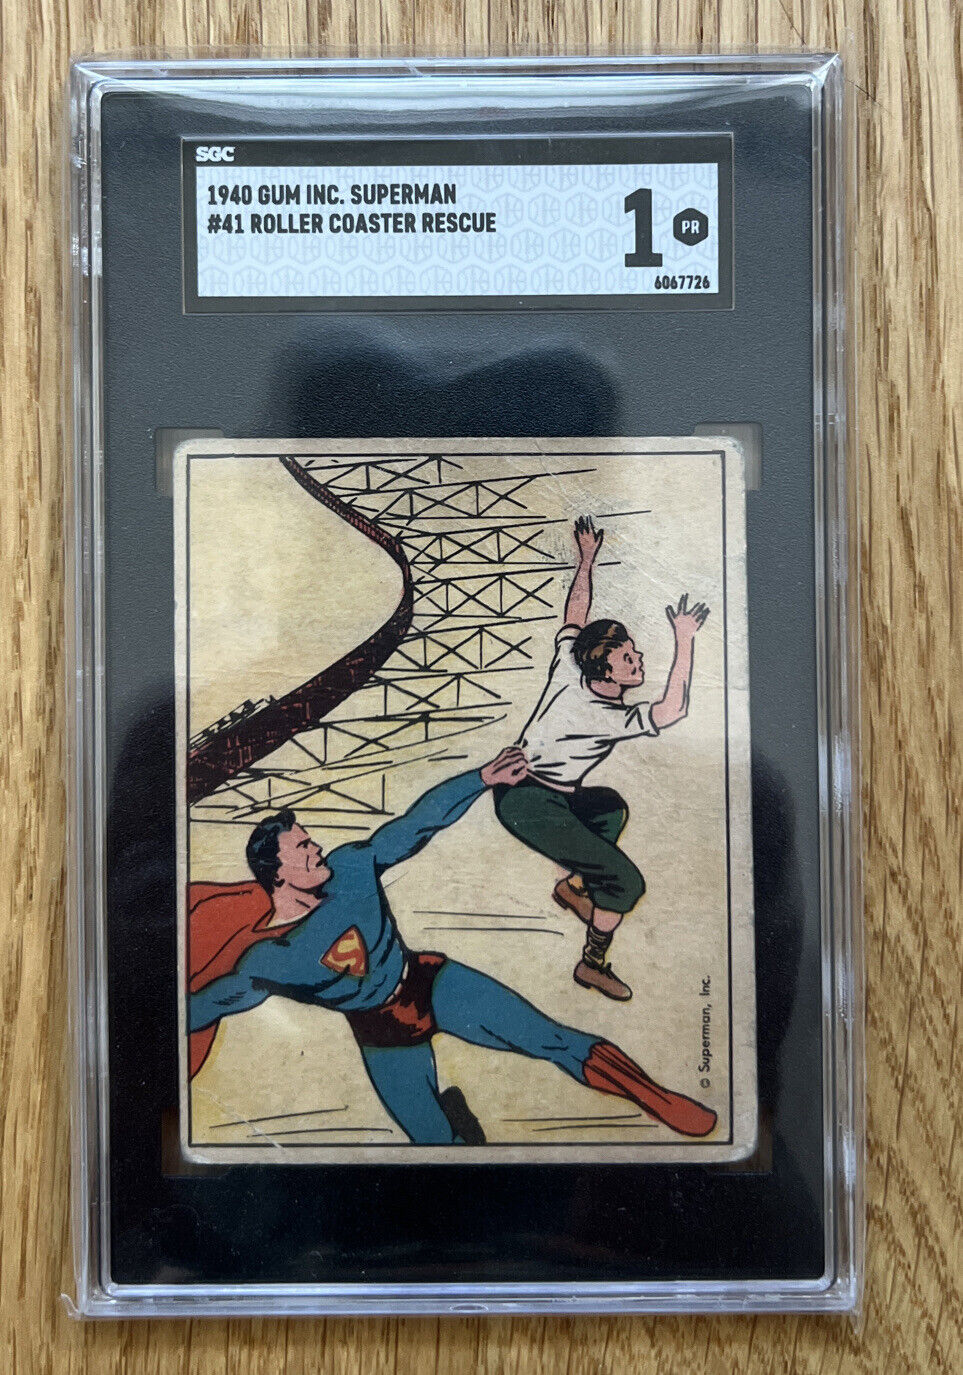 1940 Superman #41 Roller Coaster Rescue Gum Inc. SGC 1